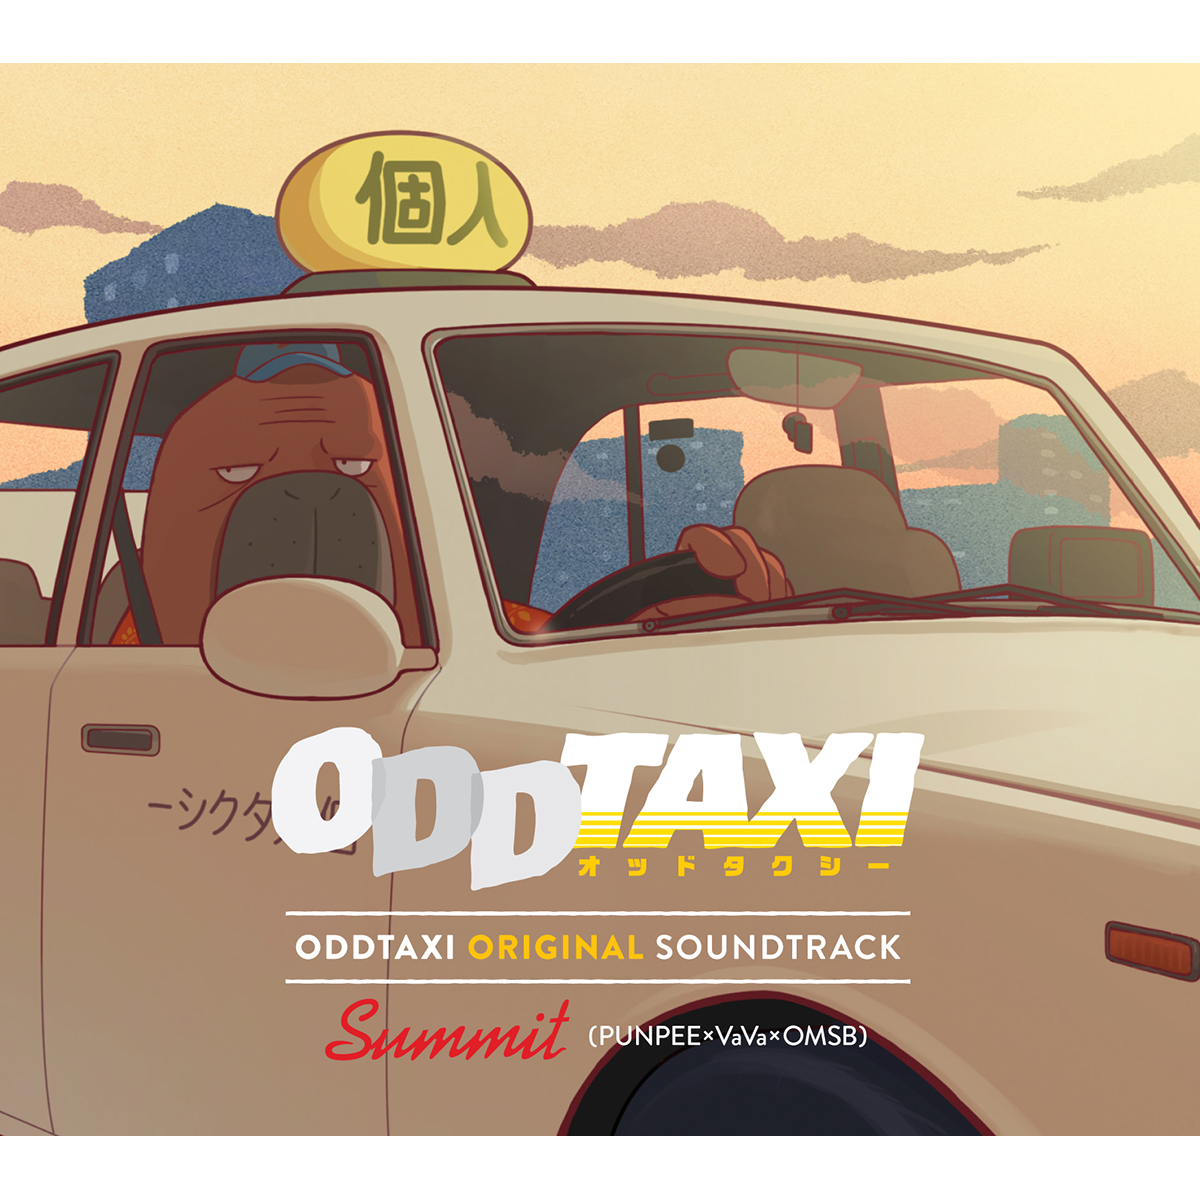 アニメ『オッドタクシー』の『ODDTAXI ORIGINAL SOUNDTRACK』に 